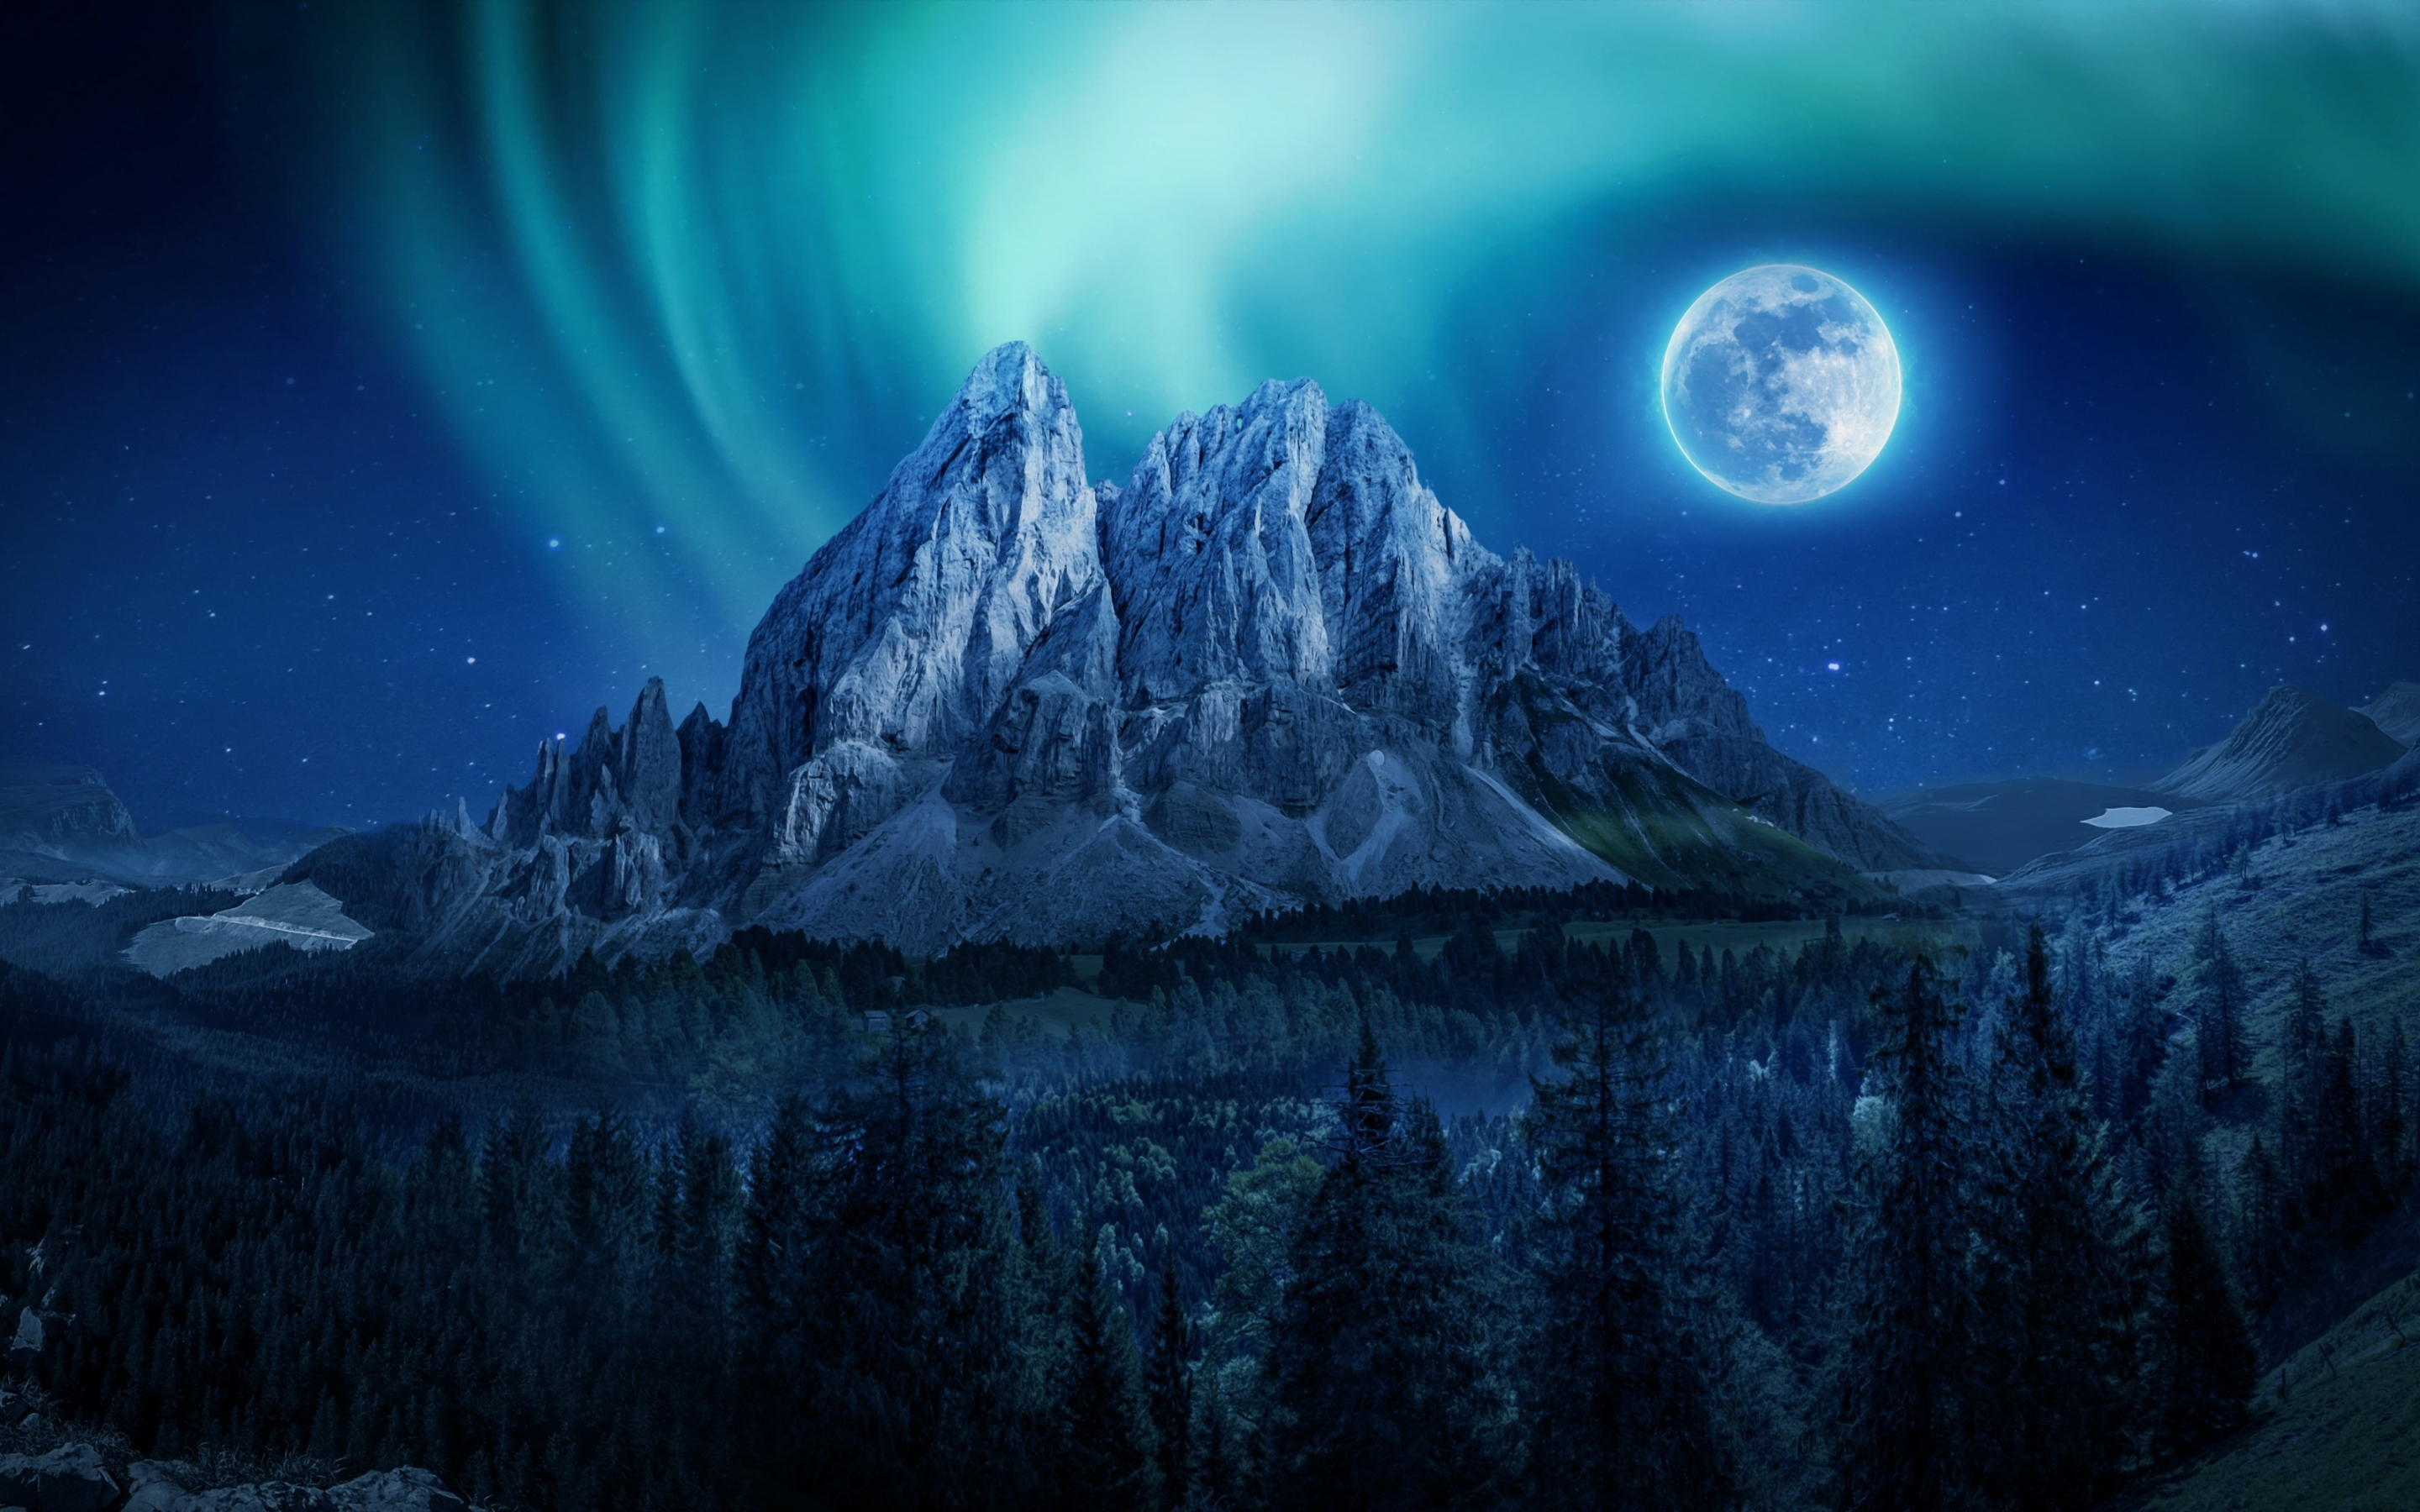 Mountain, Aurora, moon, night, 2880x1800 wallpaper